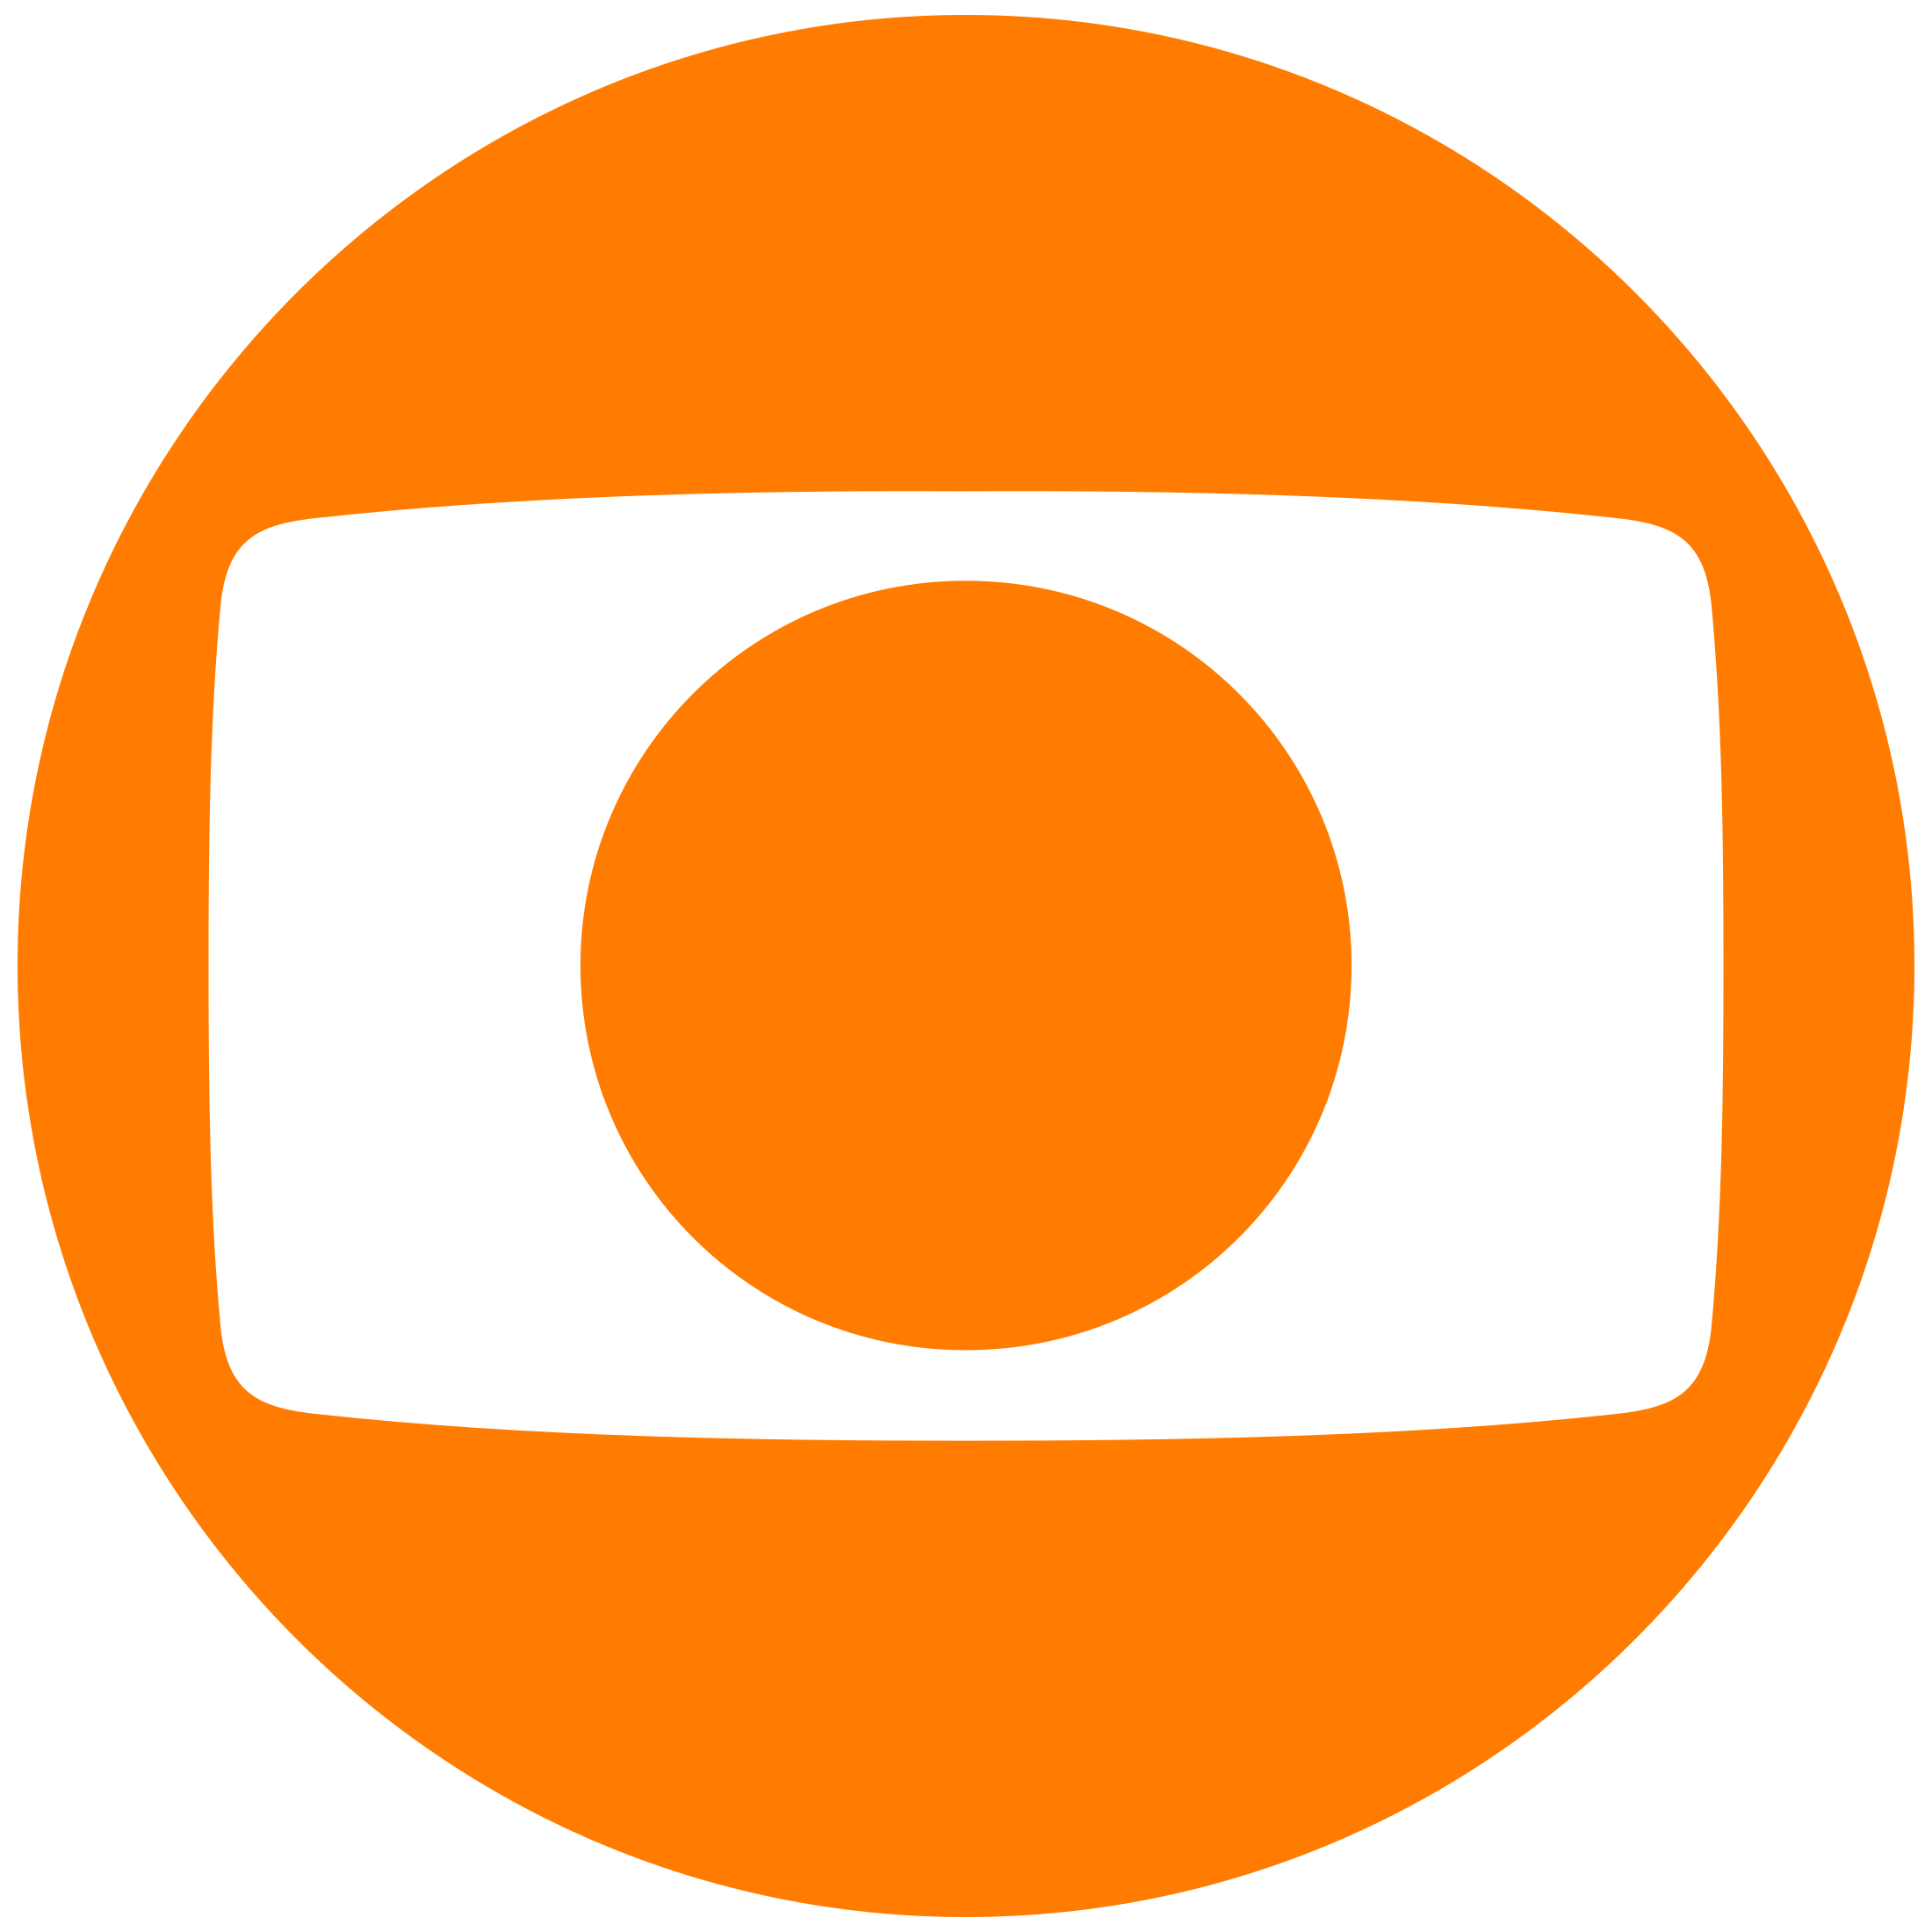 Rede Globo Logo Transparent Photograph